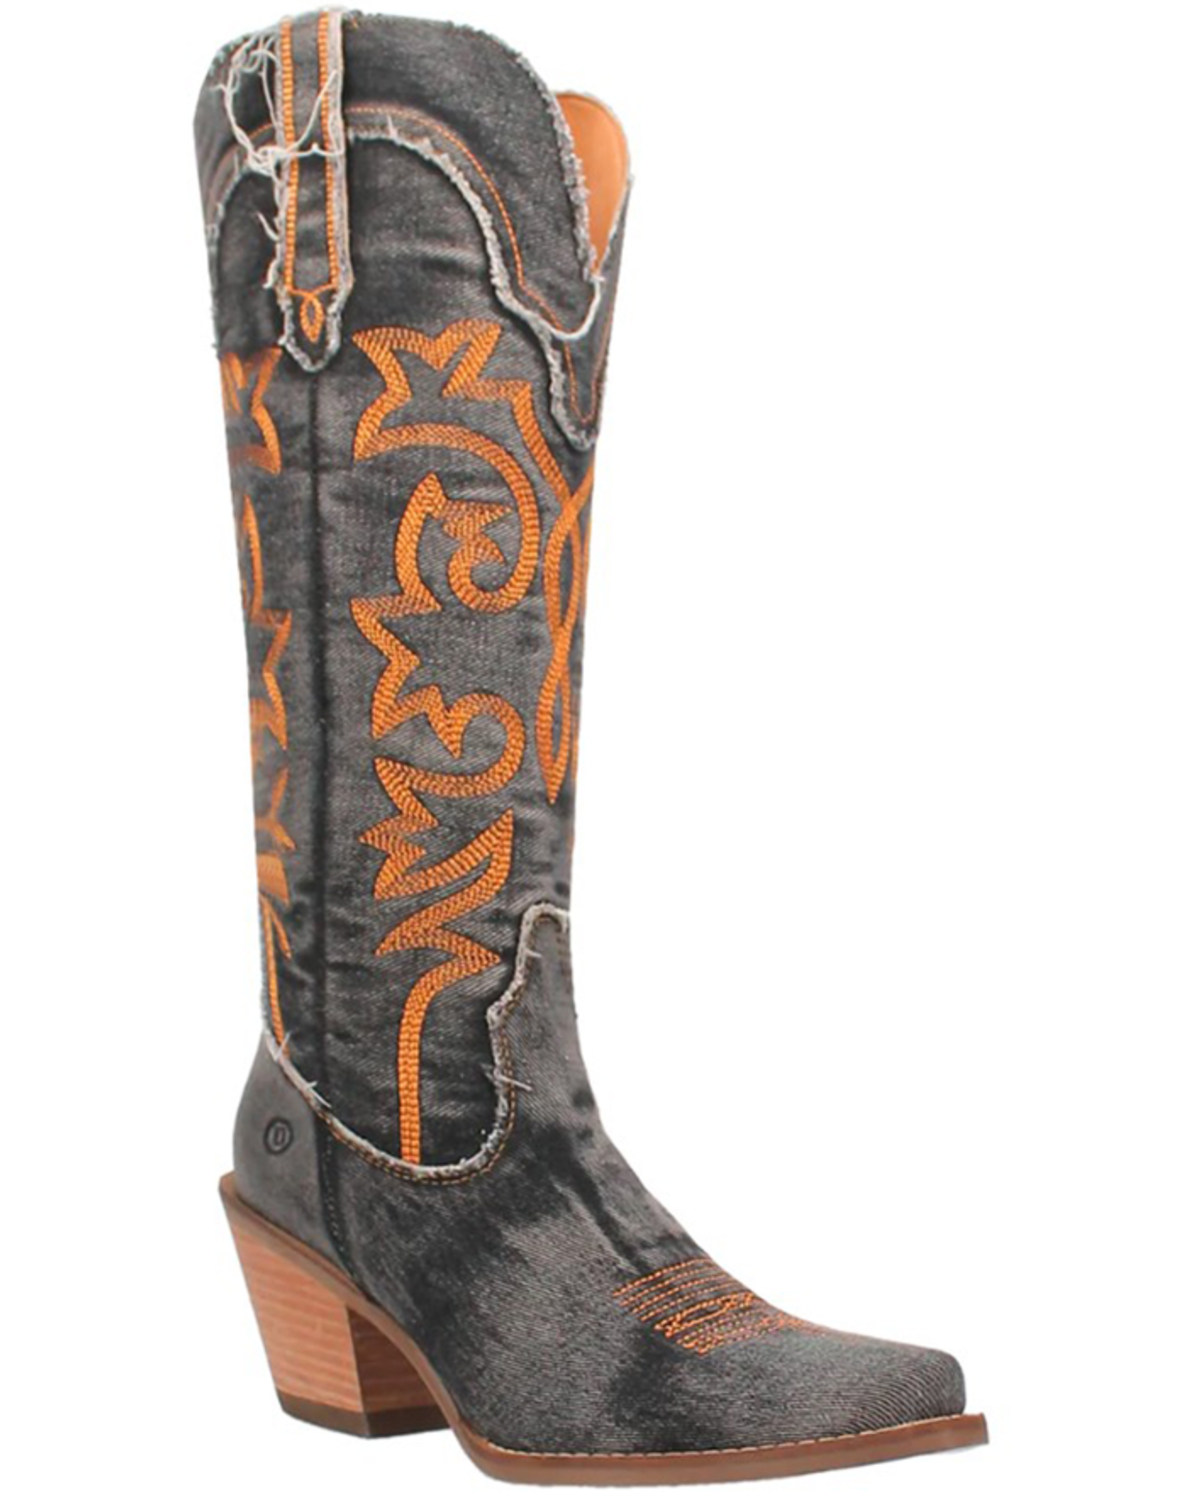 Dingo Women's Texas Tornado Tall Western Boots